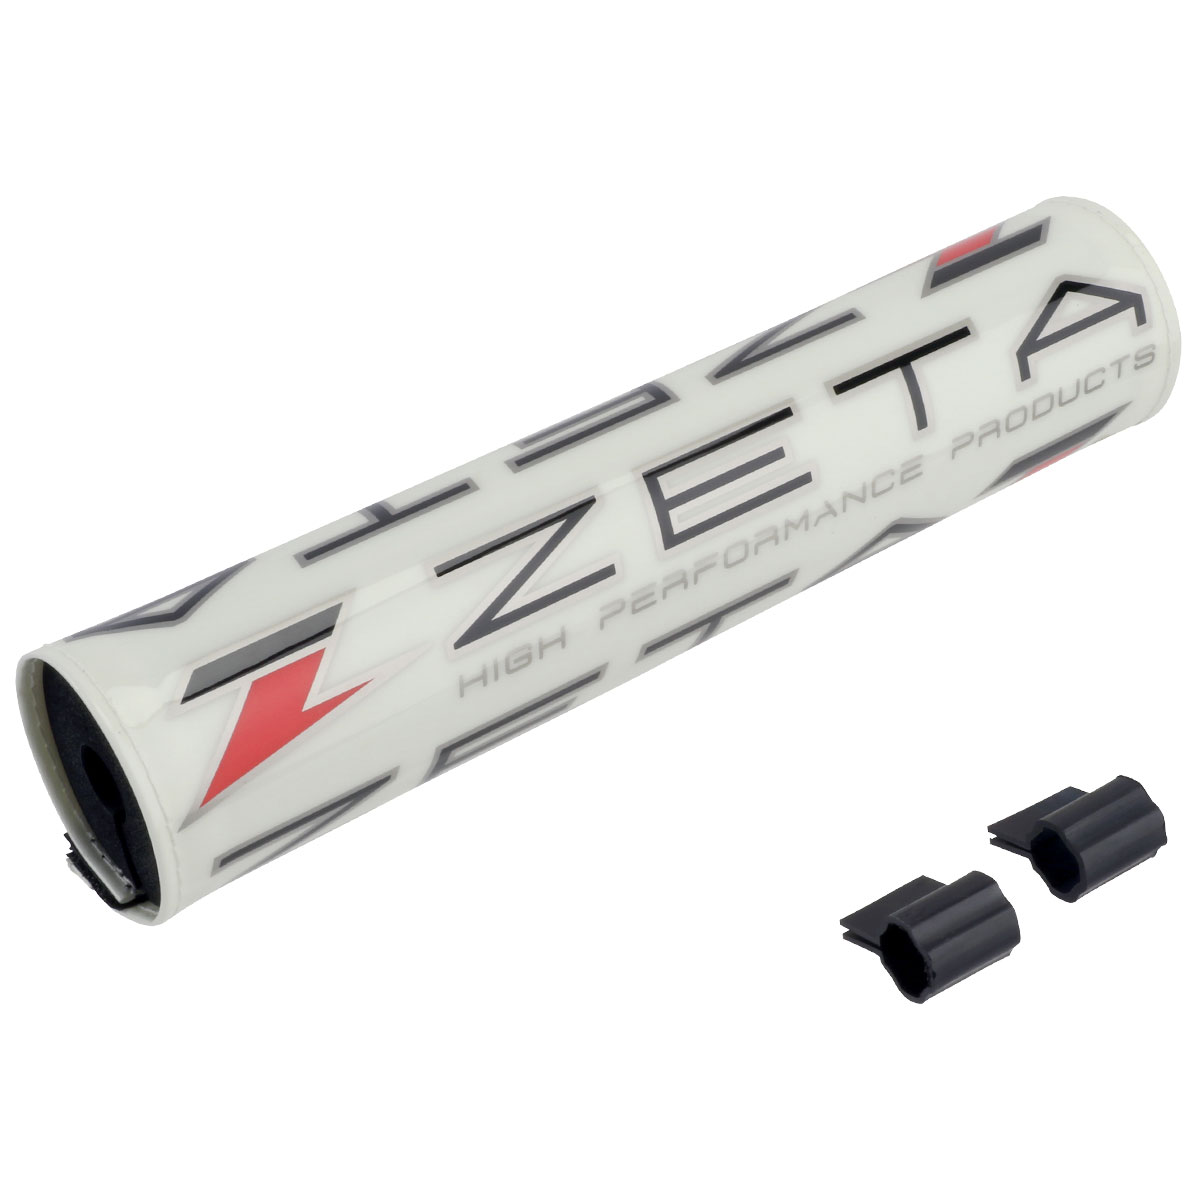 ZETA COMPバーパッド| Dirtbikeplus (ダートバイクプラス)